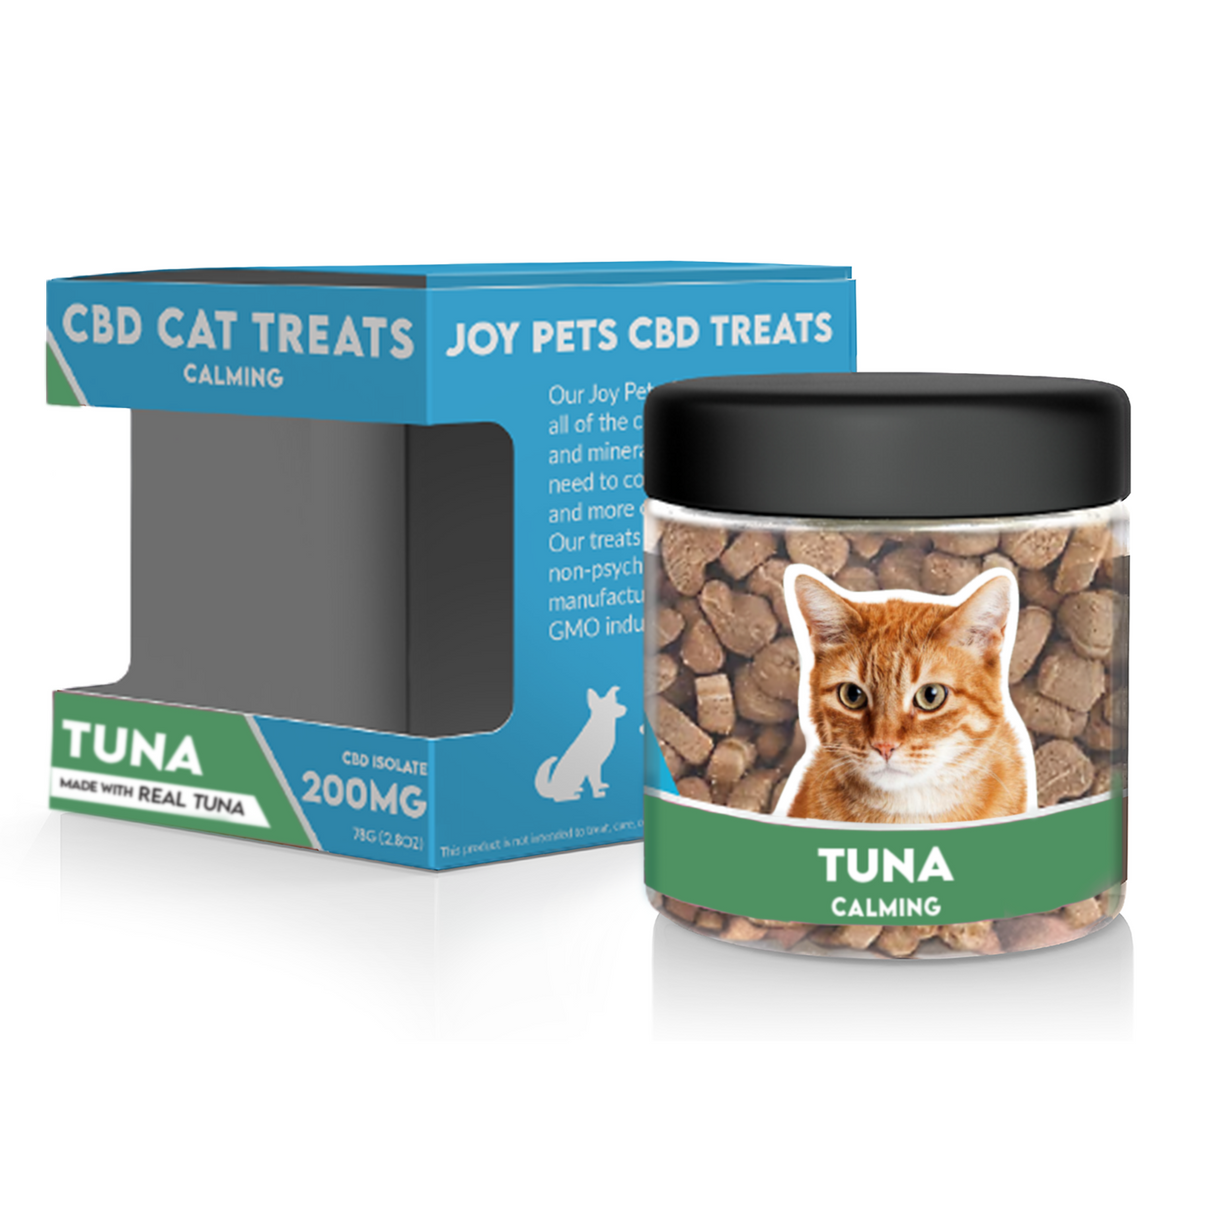 JoyPets CBD Cat Treats: Tuna